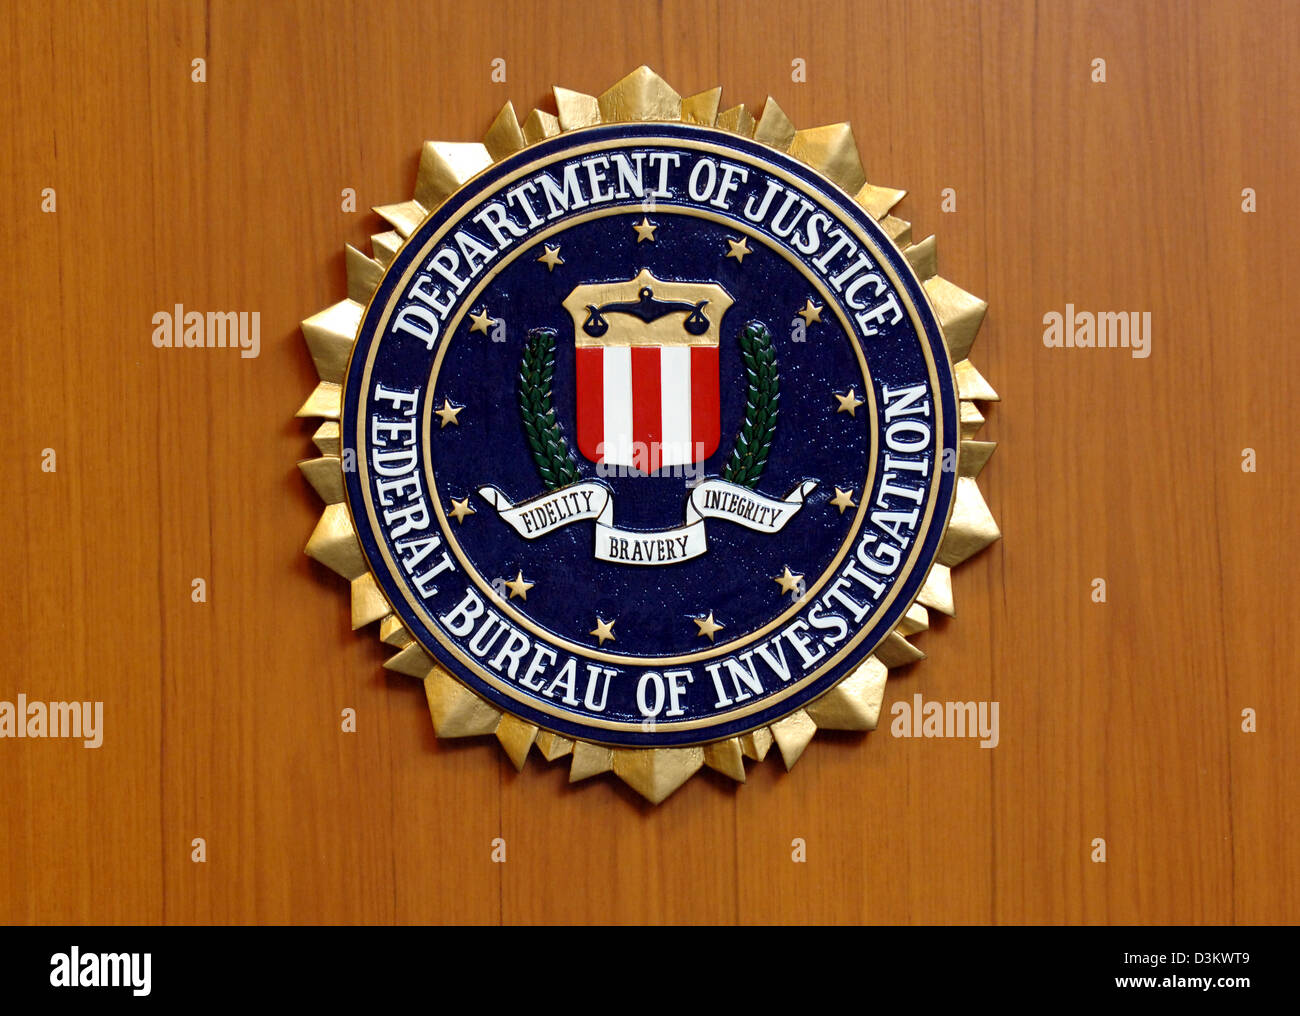 (Afp) - l'image montre l'emblème du Federal Bureau of Investigation (FBI) du ministère américain de la Justice à l'ambassade américaine à Berlin, Allemagne, 06 septembre 2005. Photo : Tim Brakemeier Banque D'Images